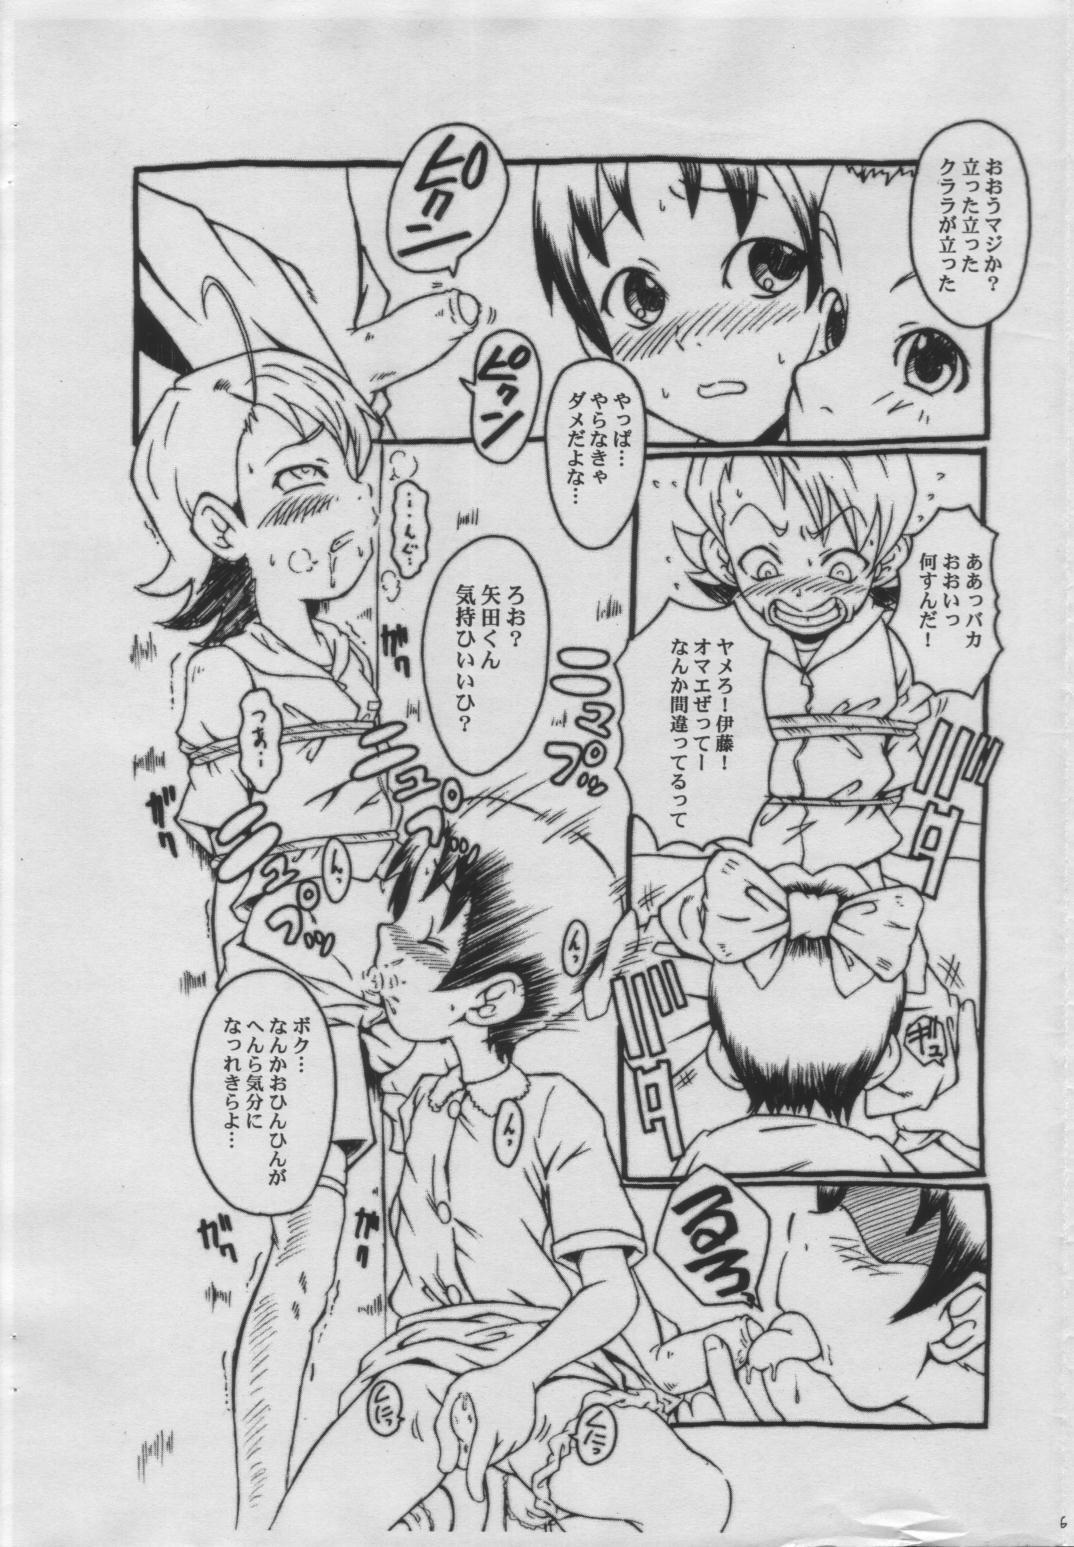 Fantasy Massage WALZ Jiikokyun Tenraku URABAMBI Shota Collection 5-gou - Ojamajo doremi Ginger - Page 5